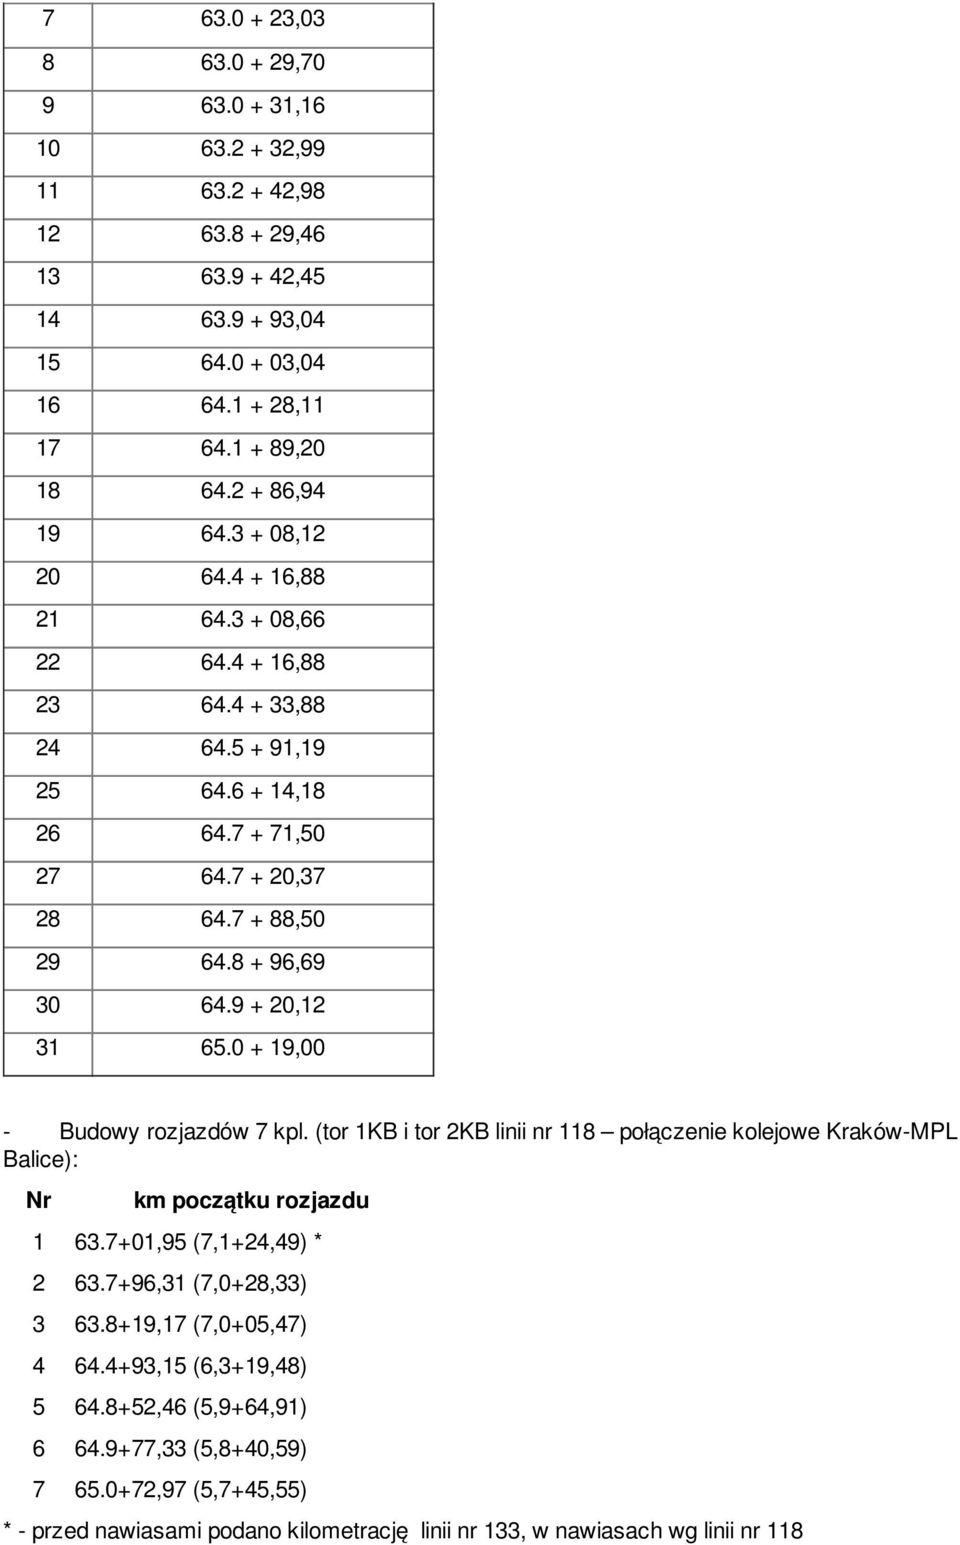 0 + 19,00 - Budowy rozjazdów 7 kpl. (tor 1KB i tor 2KB linii nr 118 połączenie kolejowe Kraków-MPL Balice): Nr km początku rozjazdu 1 63.7+01,95 (7,1+24,49) * 2 63.7+96,31 (7,0+28,33) 3 63.